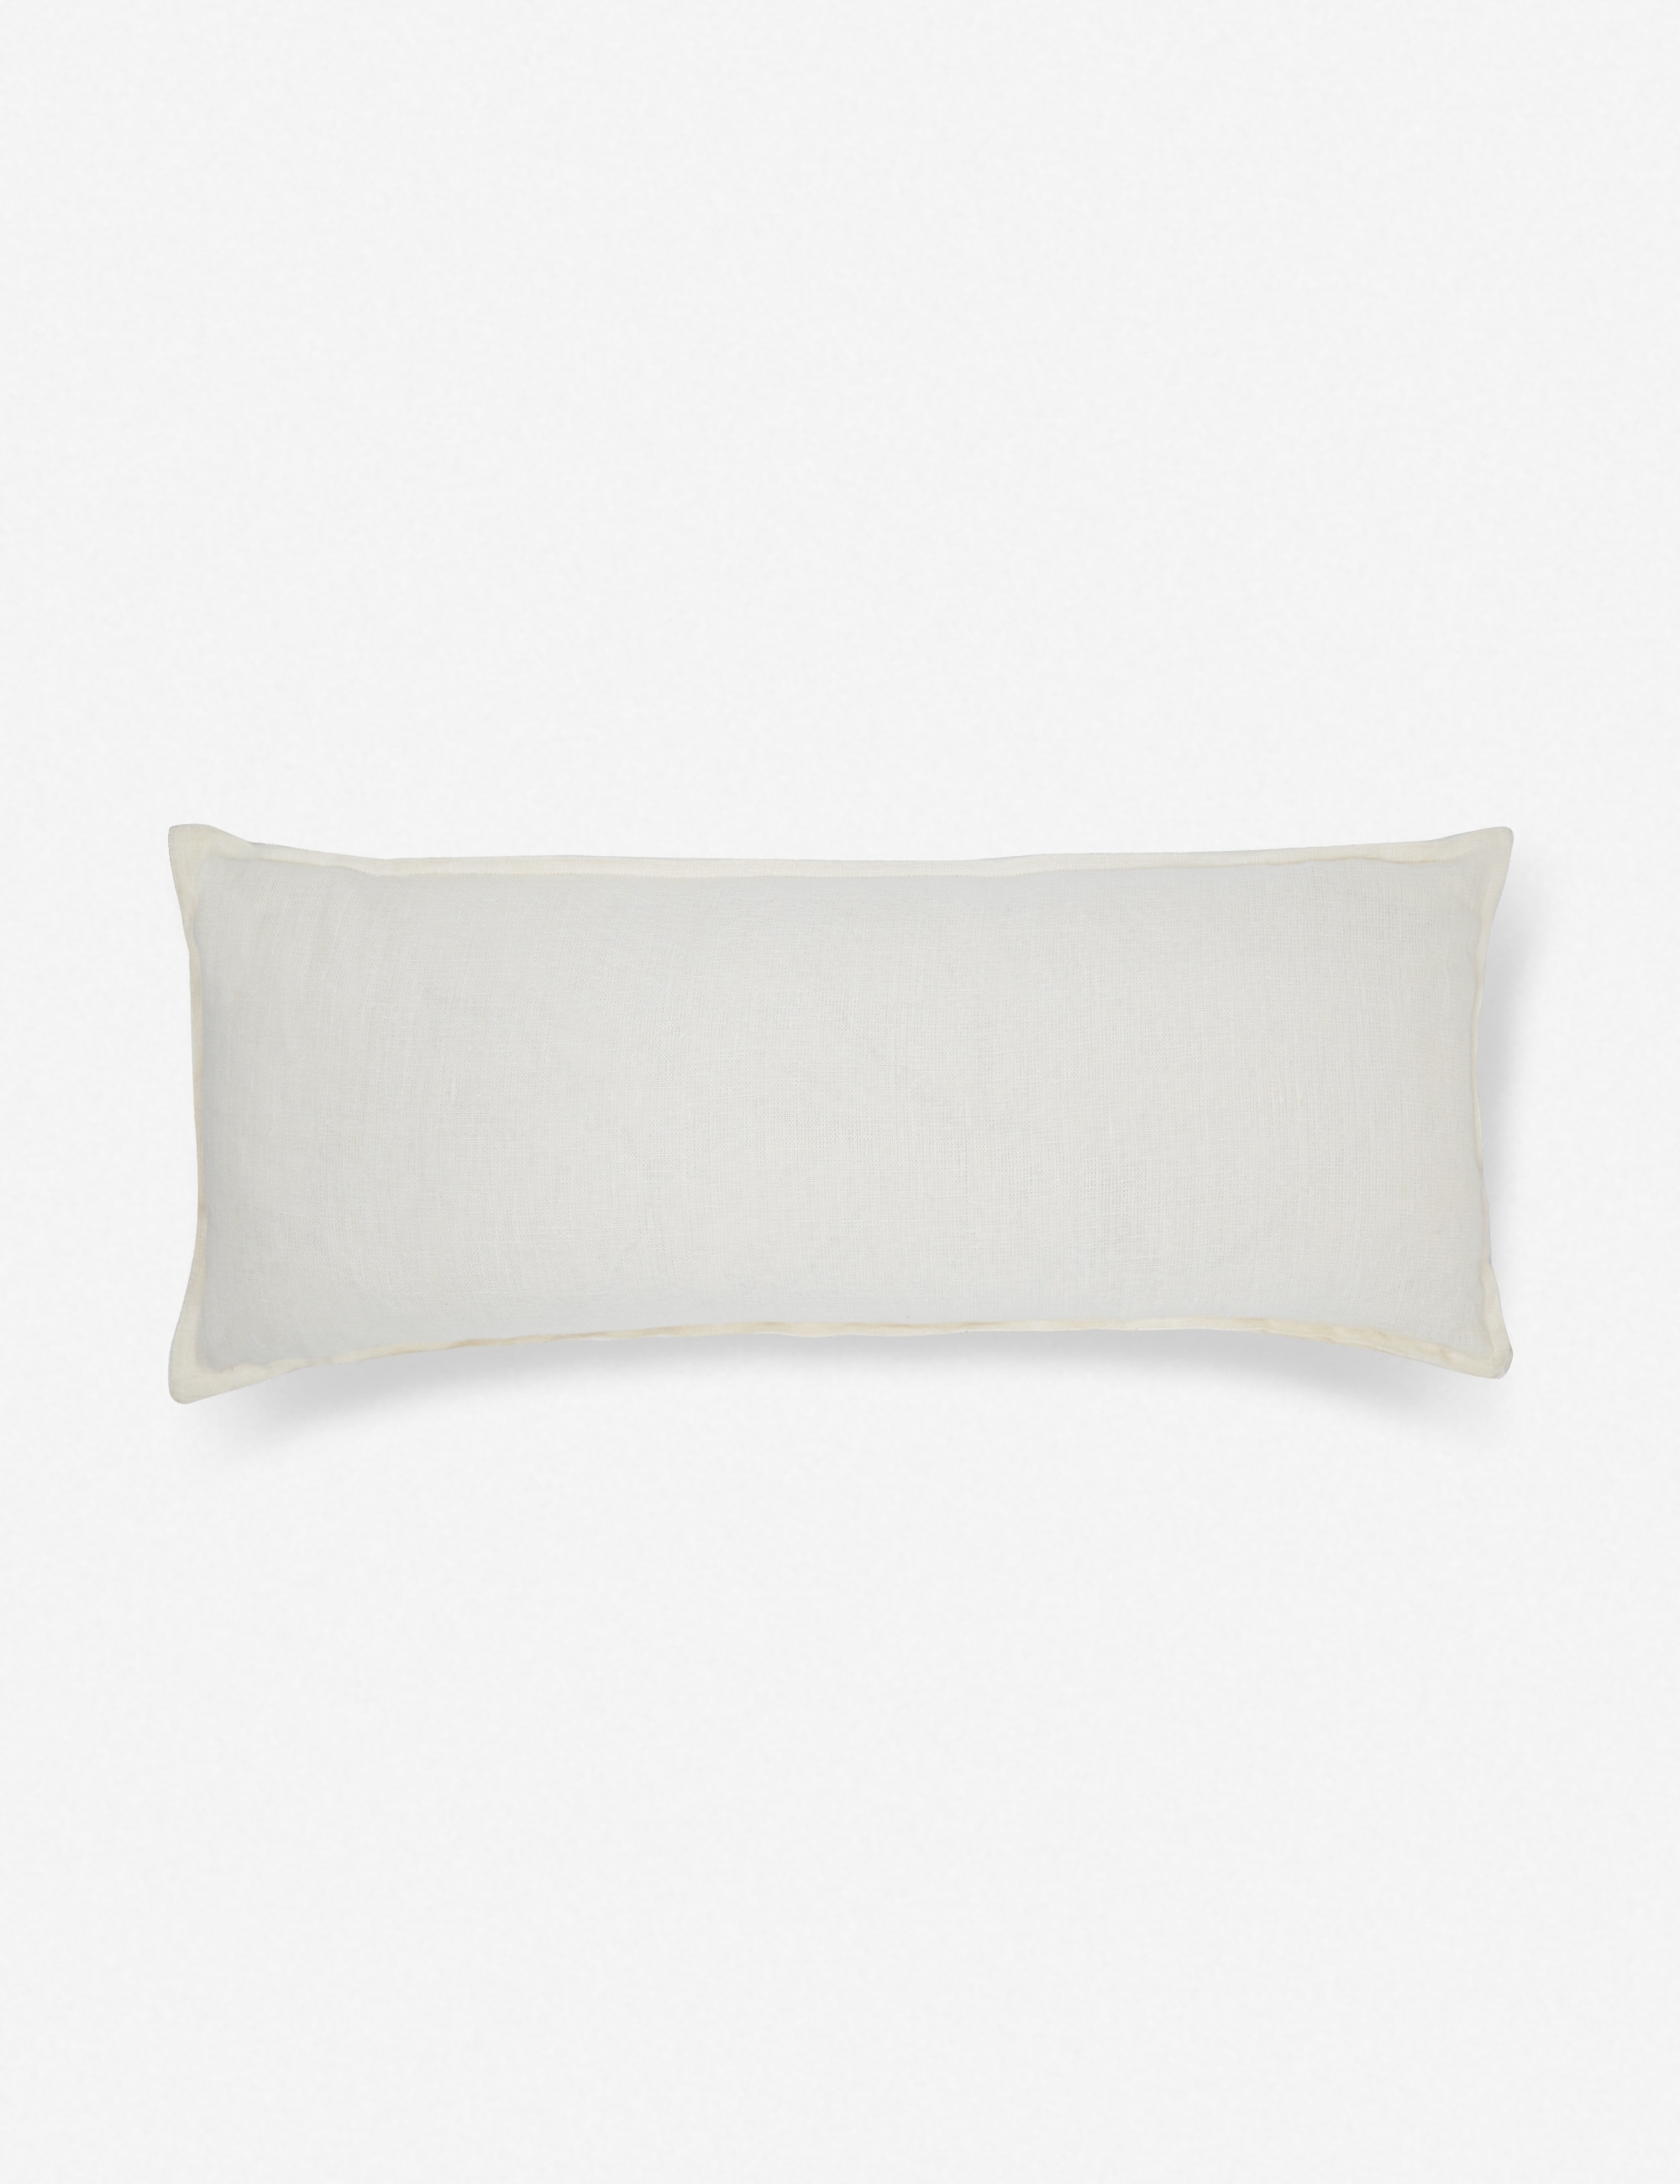 Arlo Linen Long Lumbar Pillow, Ivory - Image 1